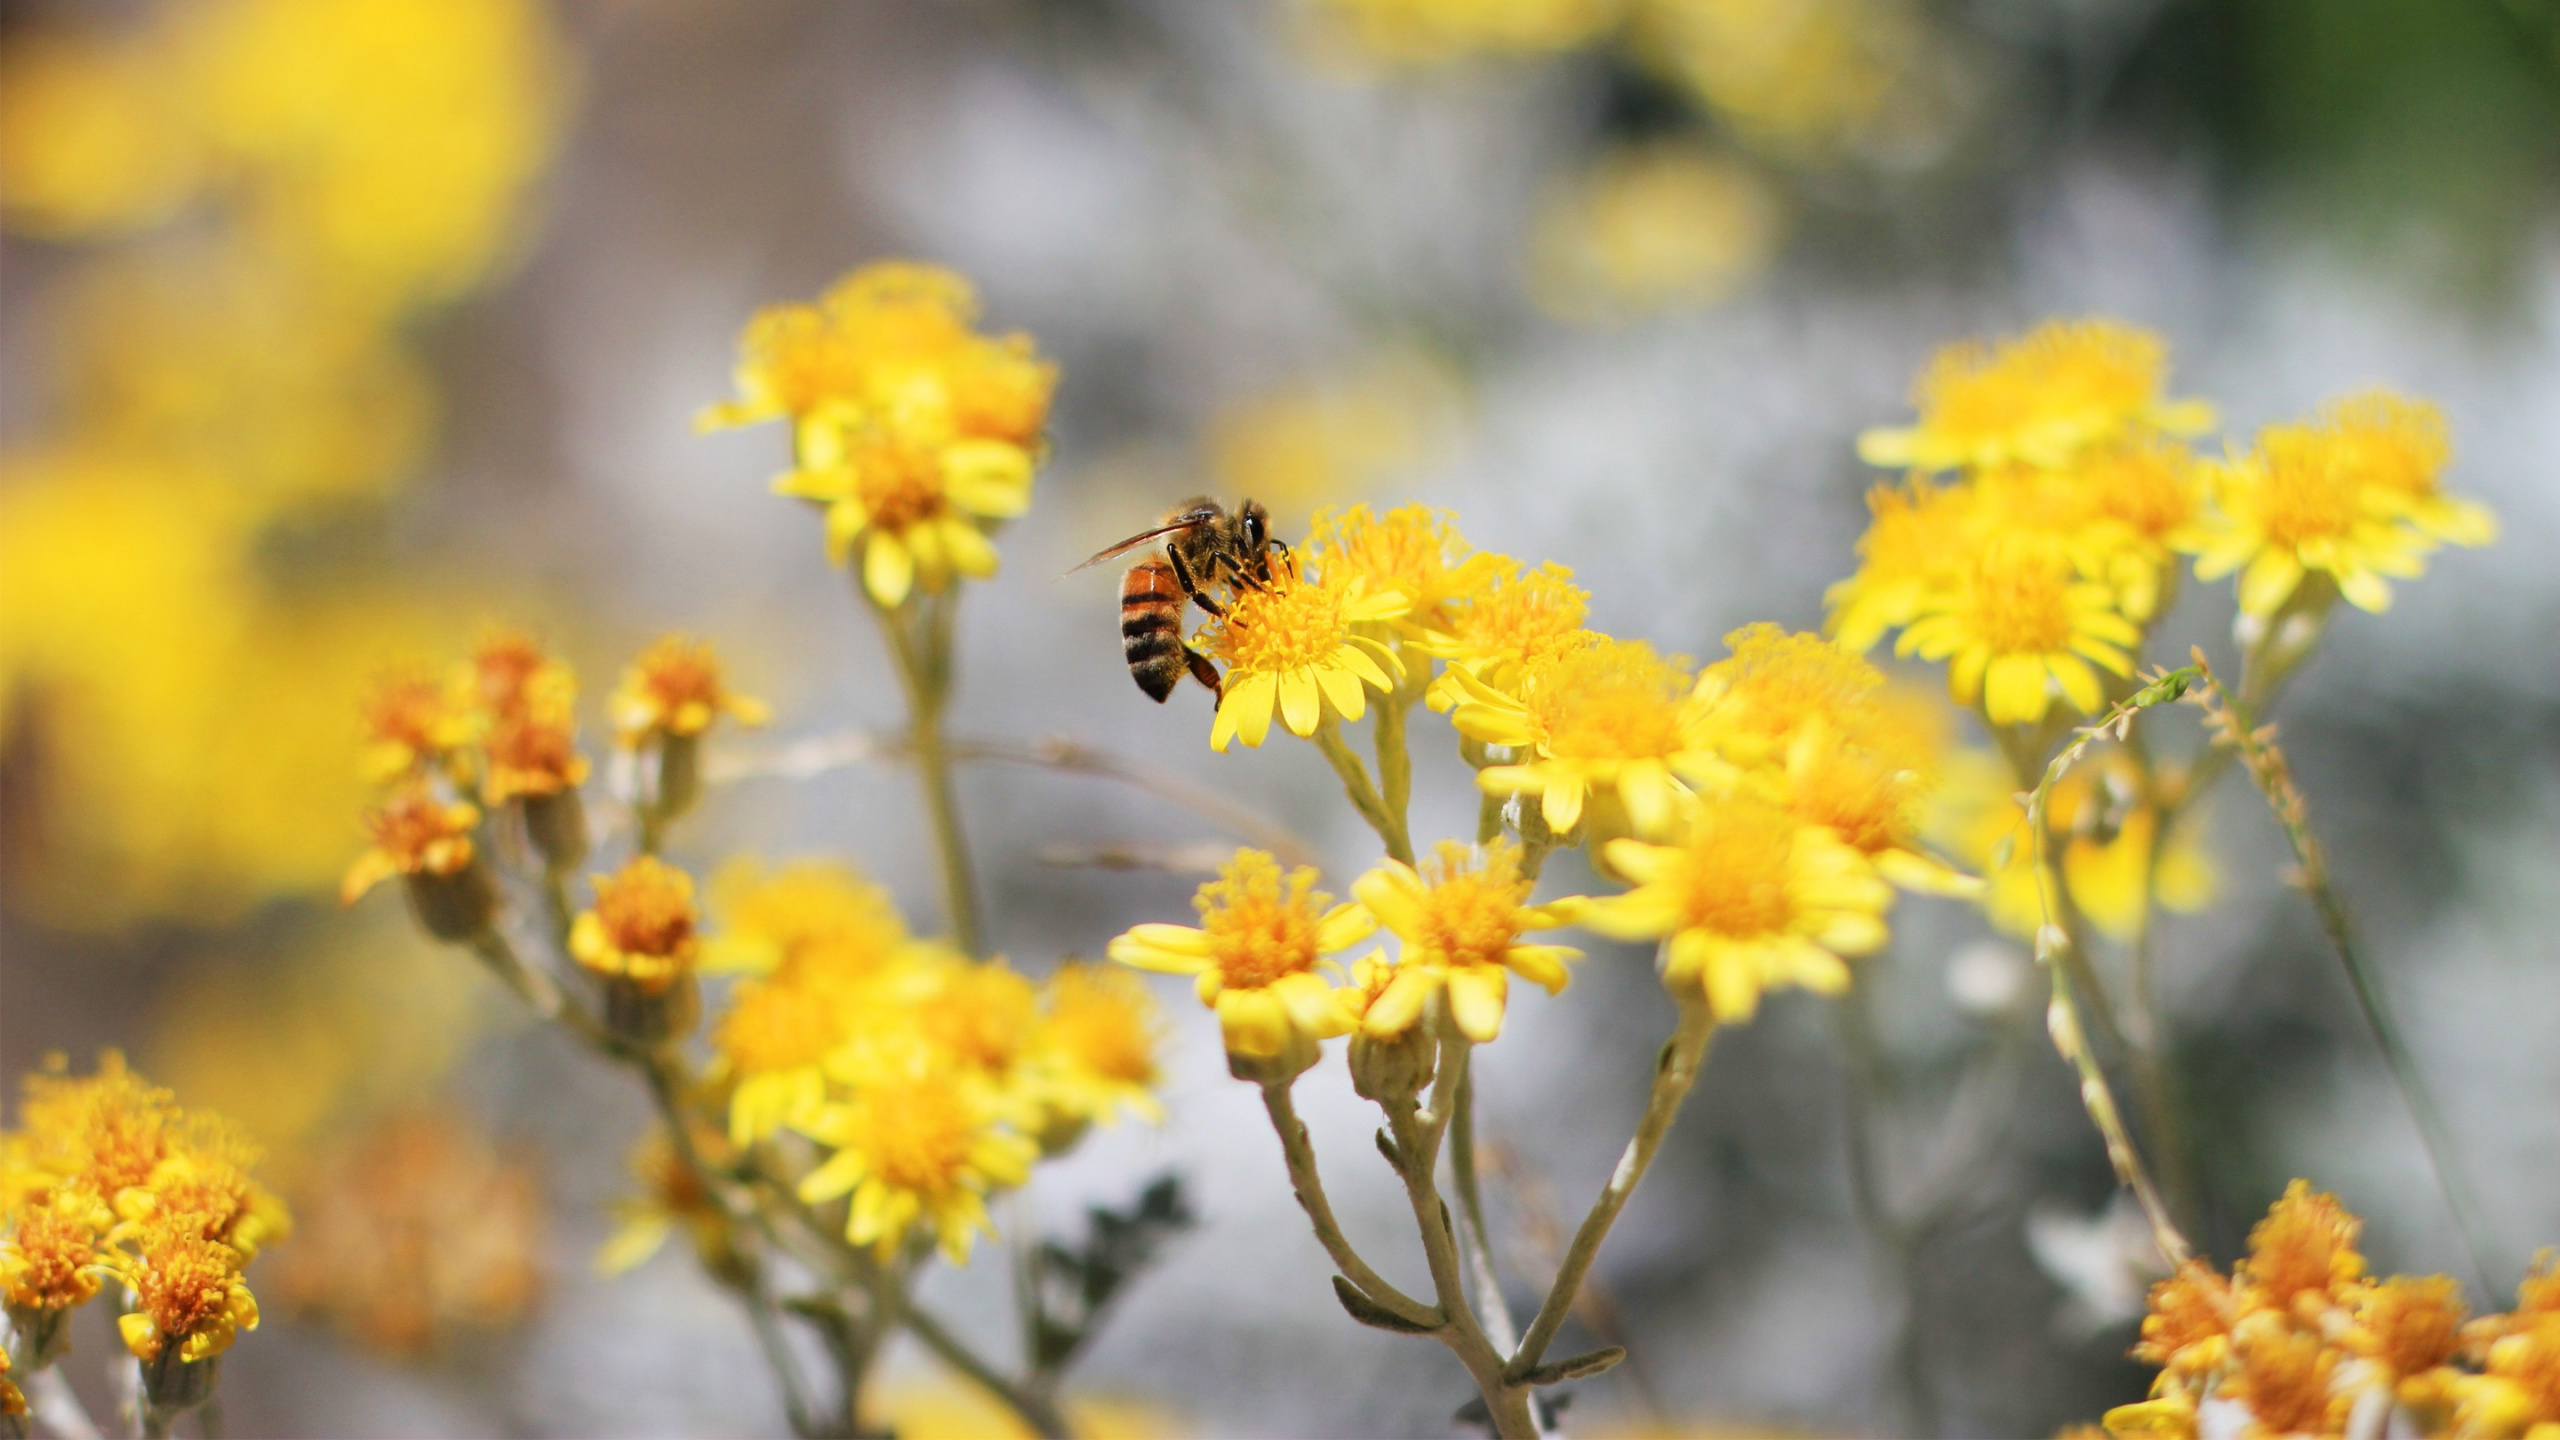 显花植物, 黄色的, 弹簧, 花粉, 野花 壁纸 2560x1440 允许